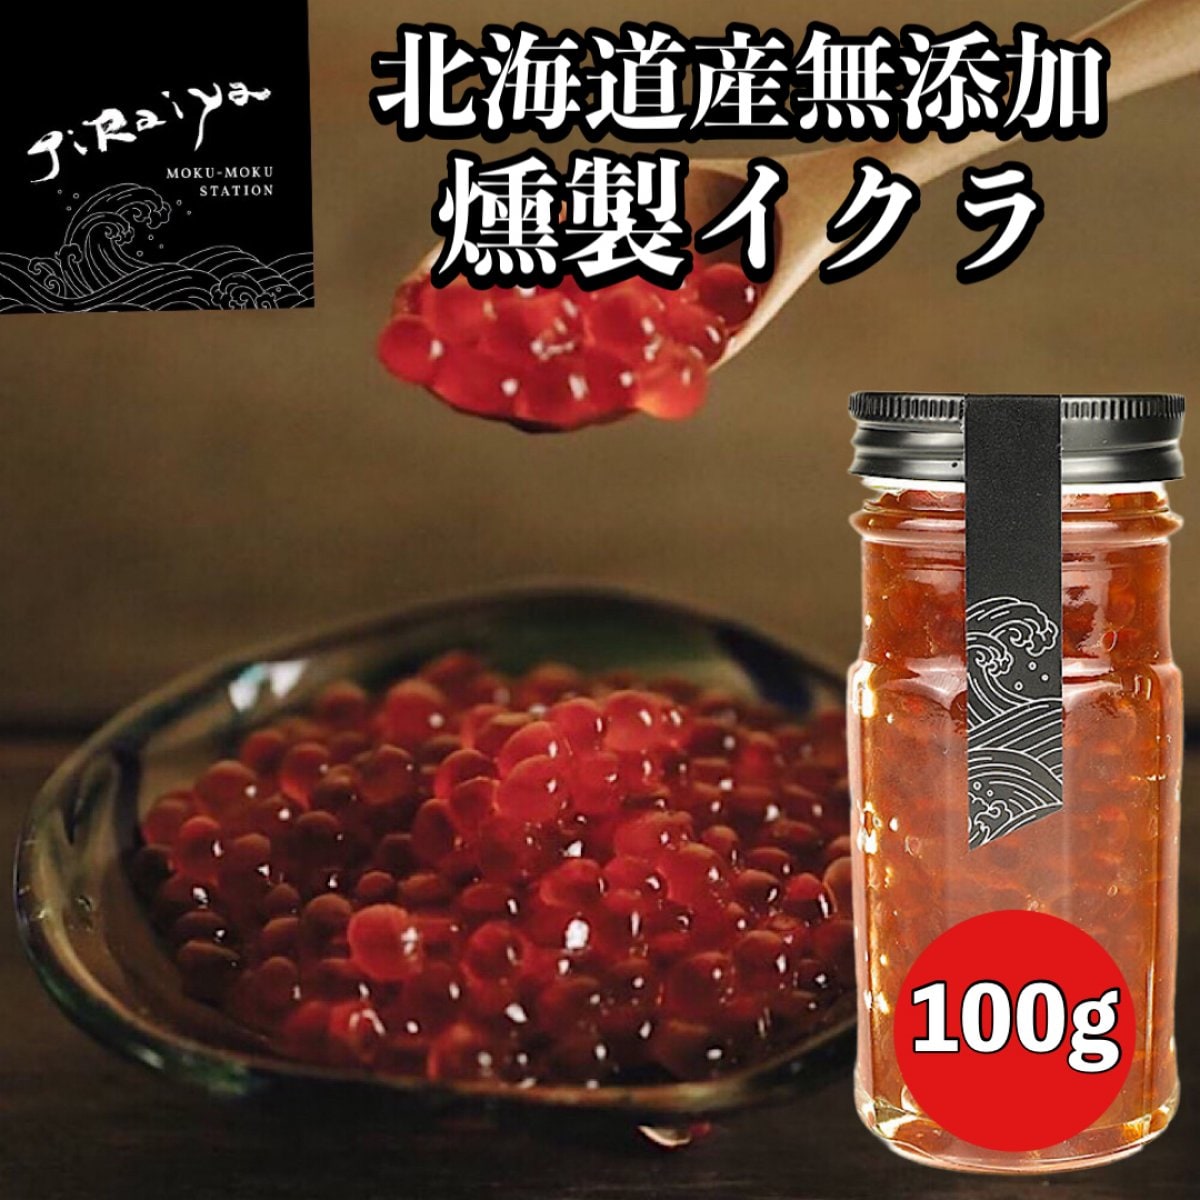 北海道産無添加燻製イクラ 100g【高ポイント還元中】